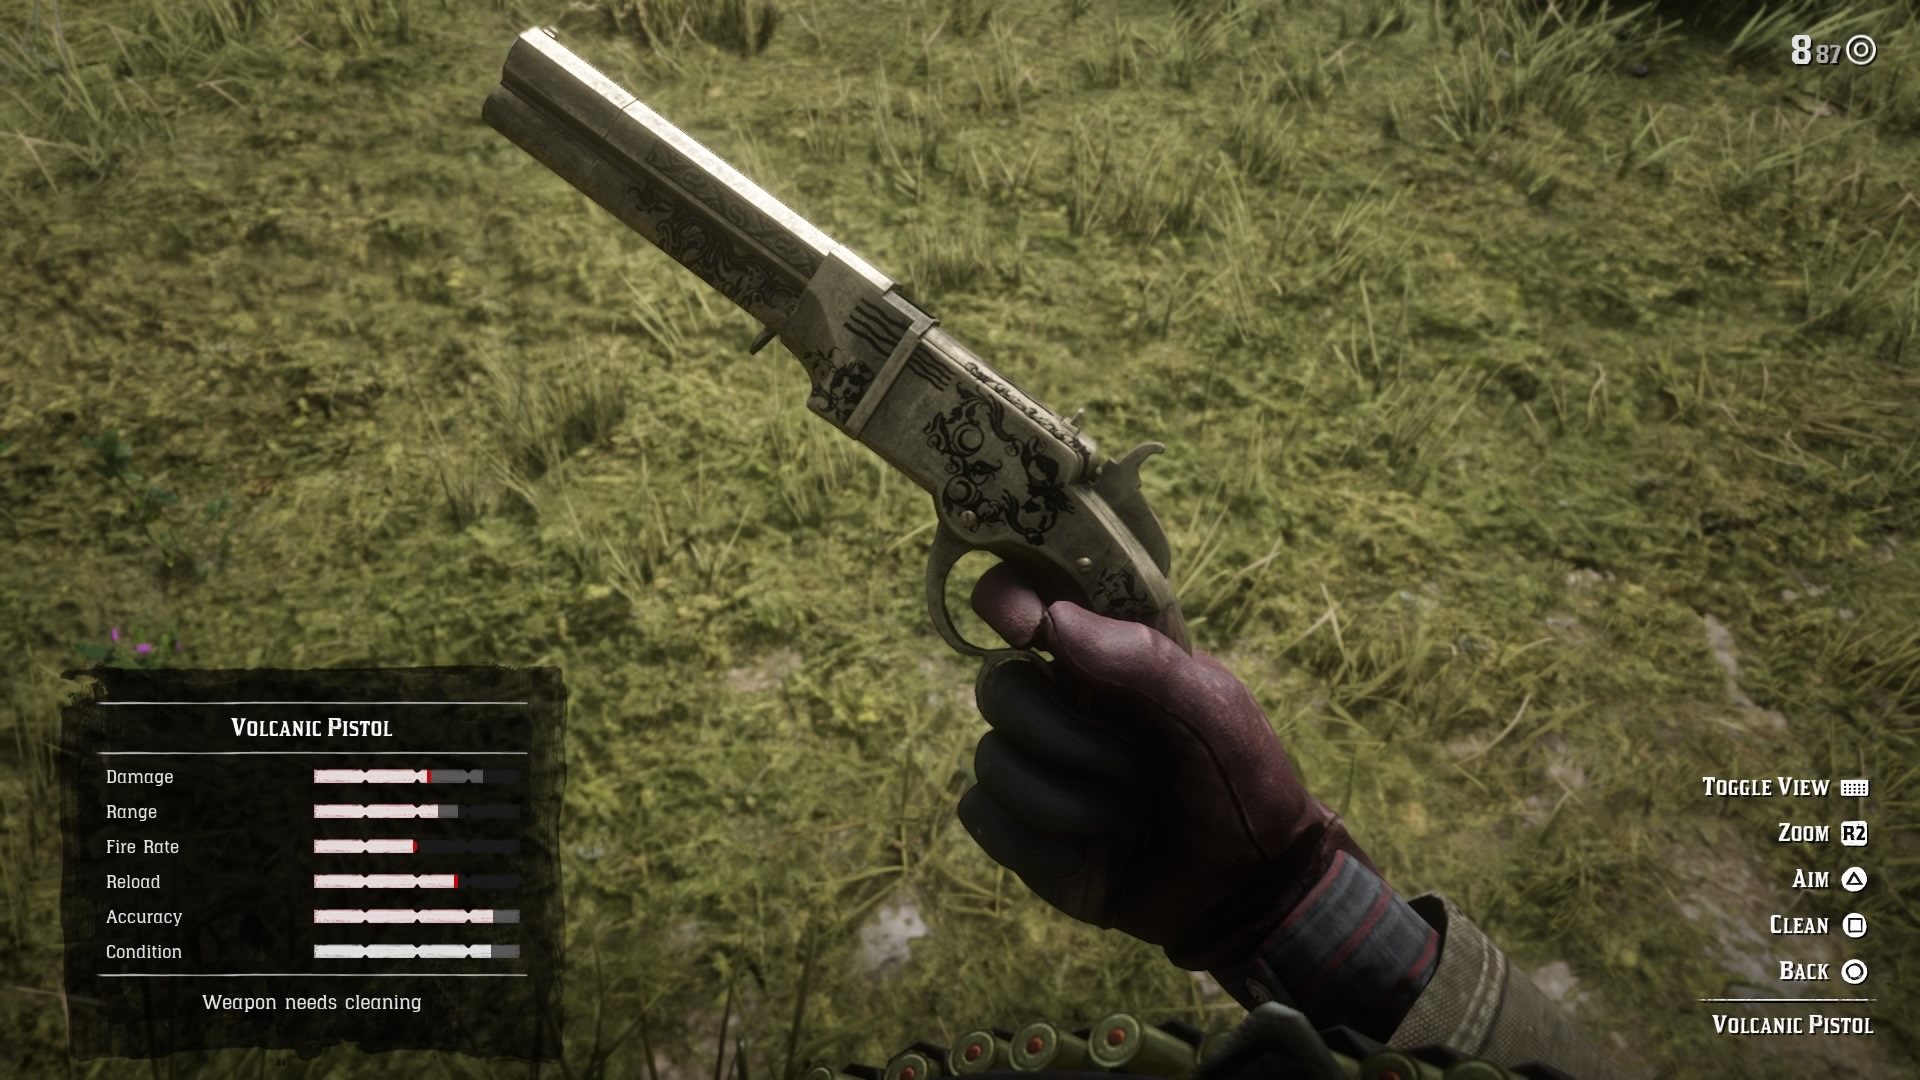 شخصی سازی اسلحه در بازی Red Dead Redemption 2 | بررسی بازی رد دد ریدمپشن ۲